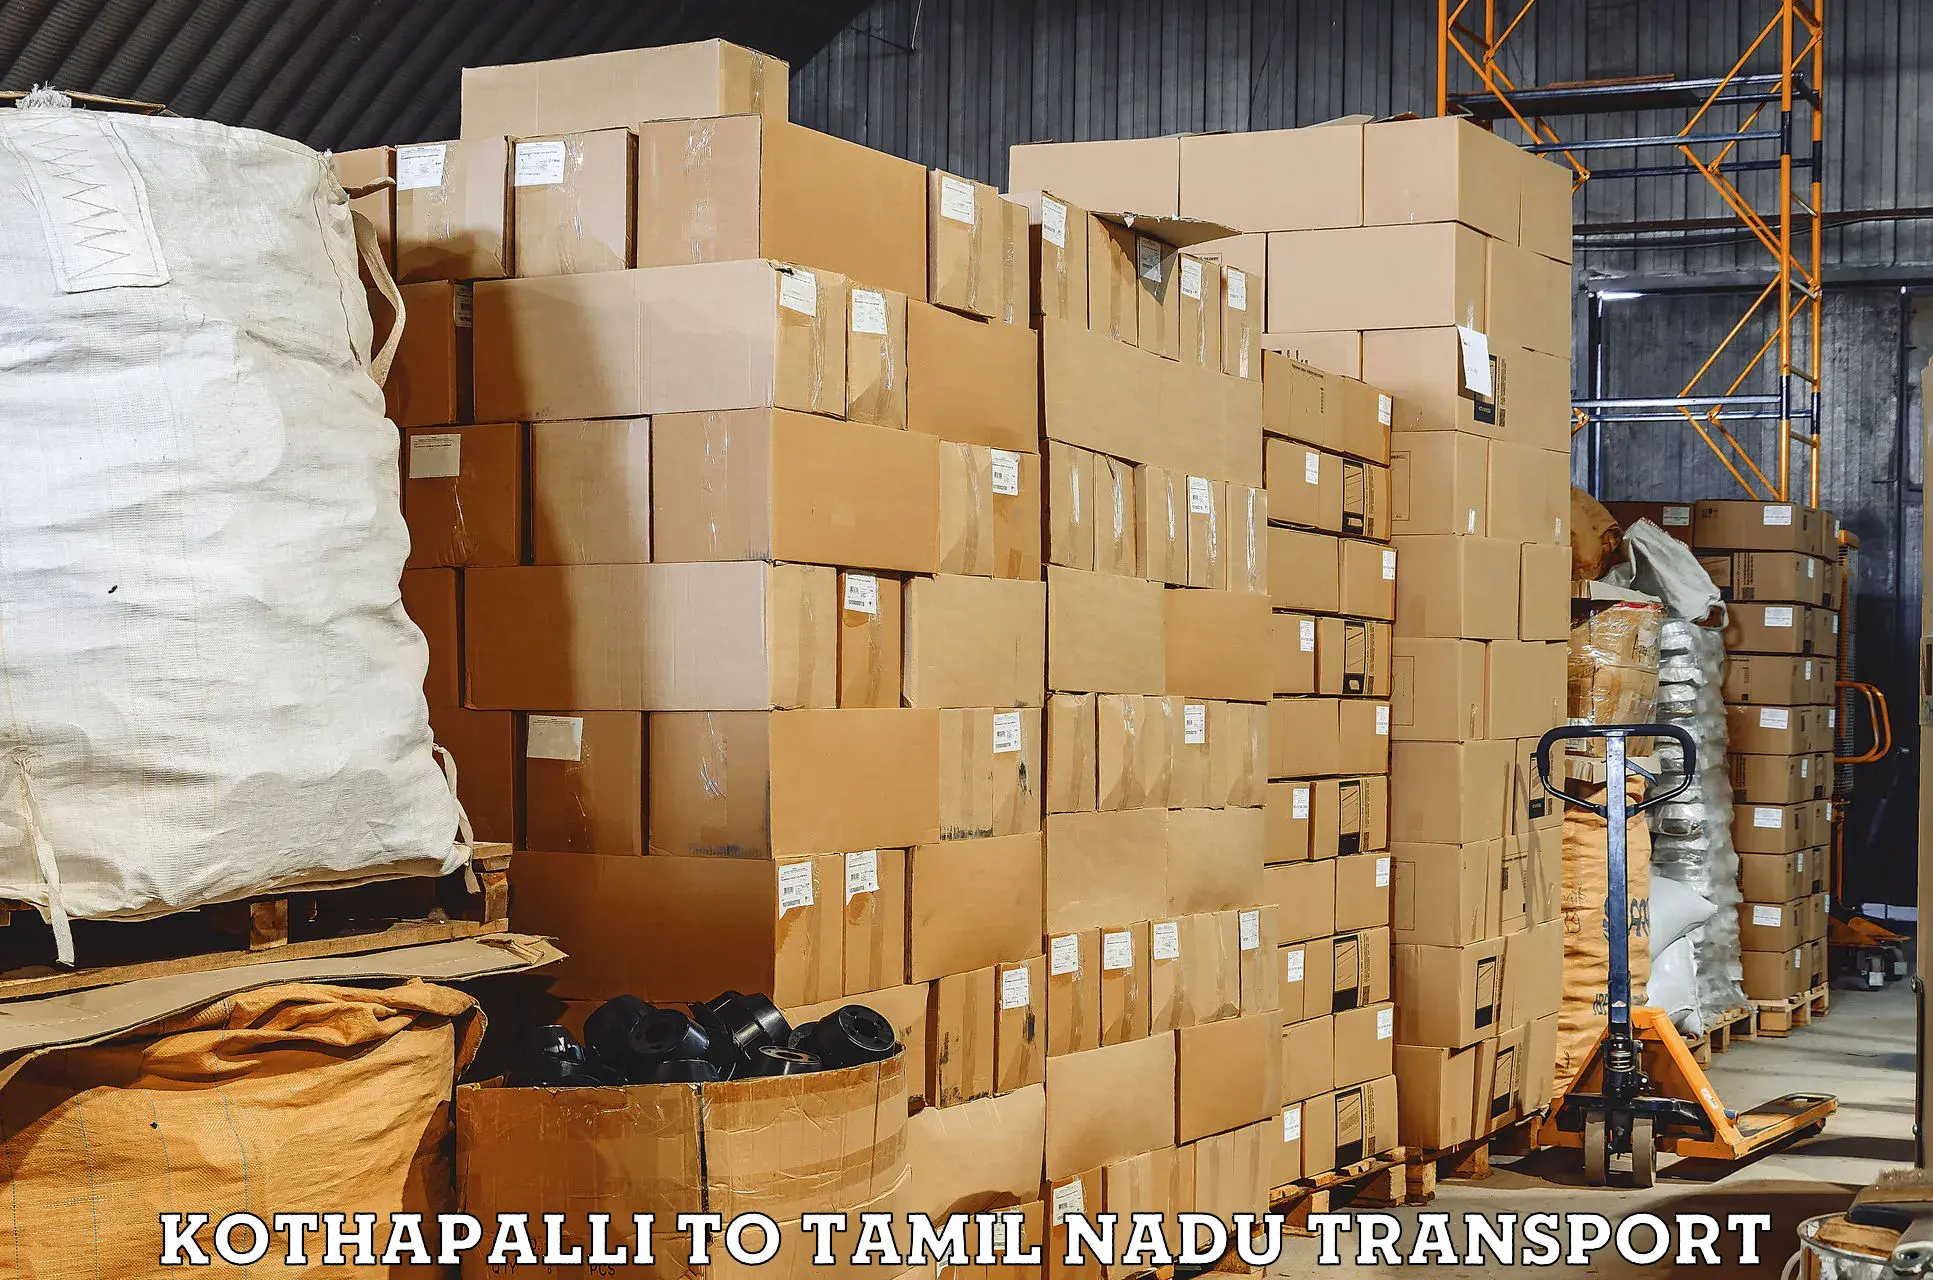 Cargo train transport services Kothapalli to Udagamandalam